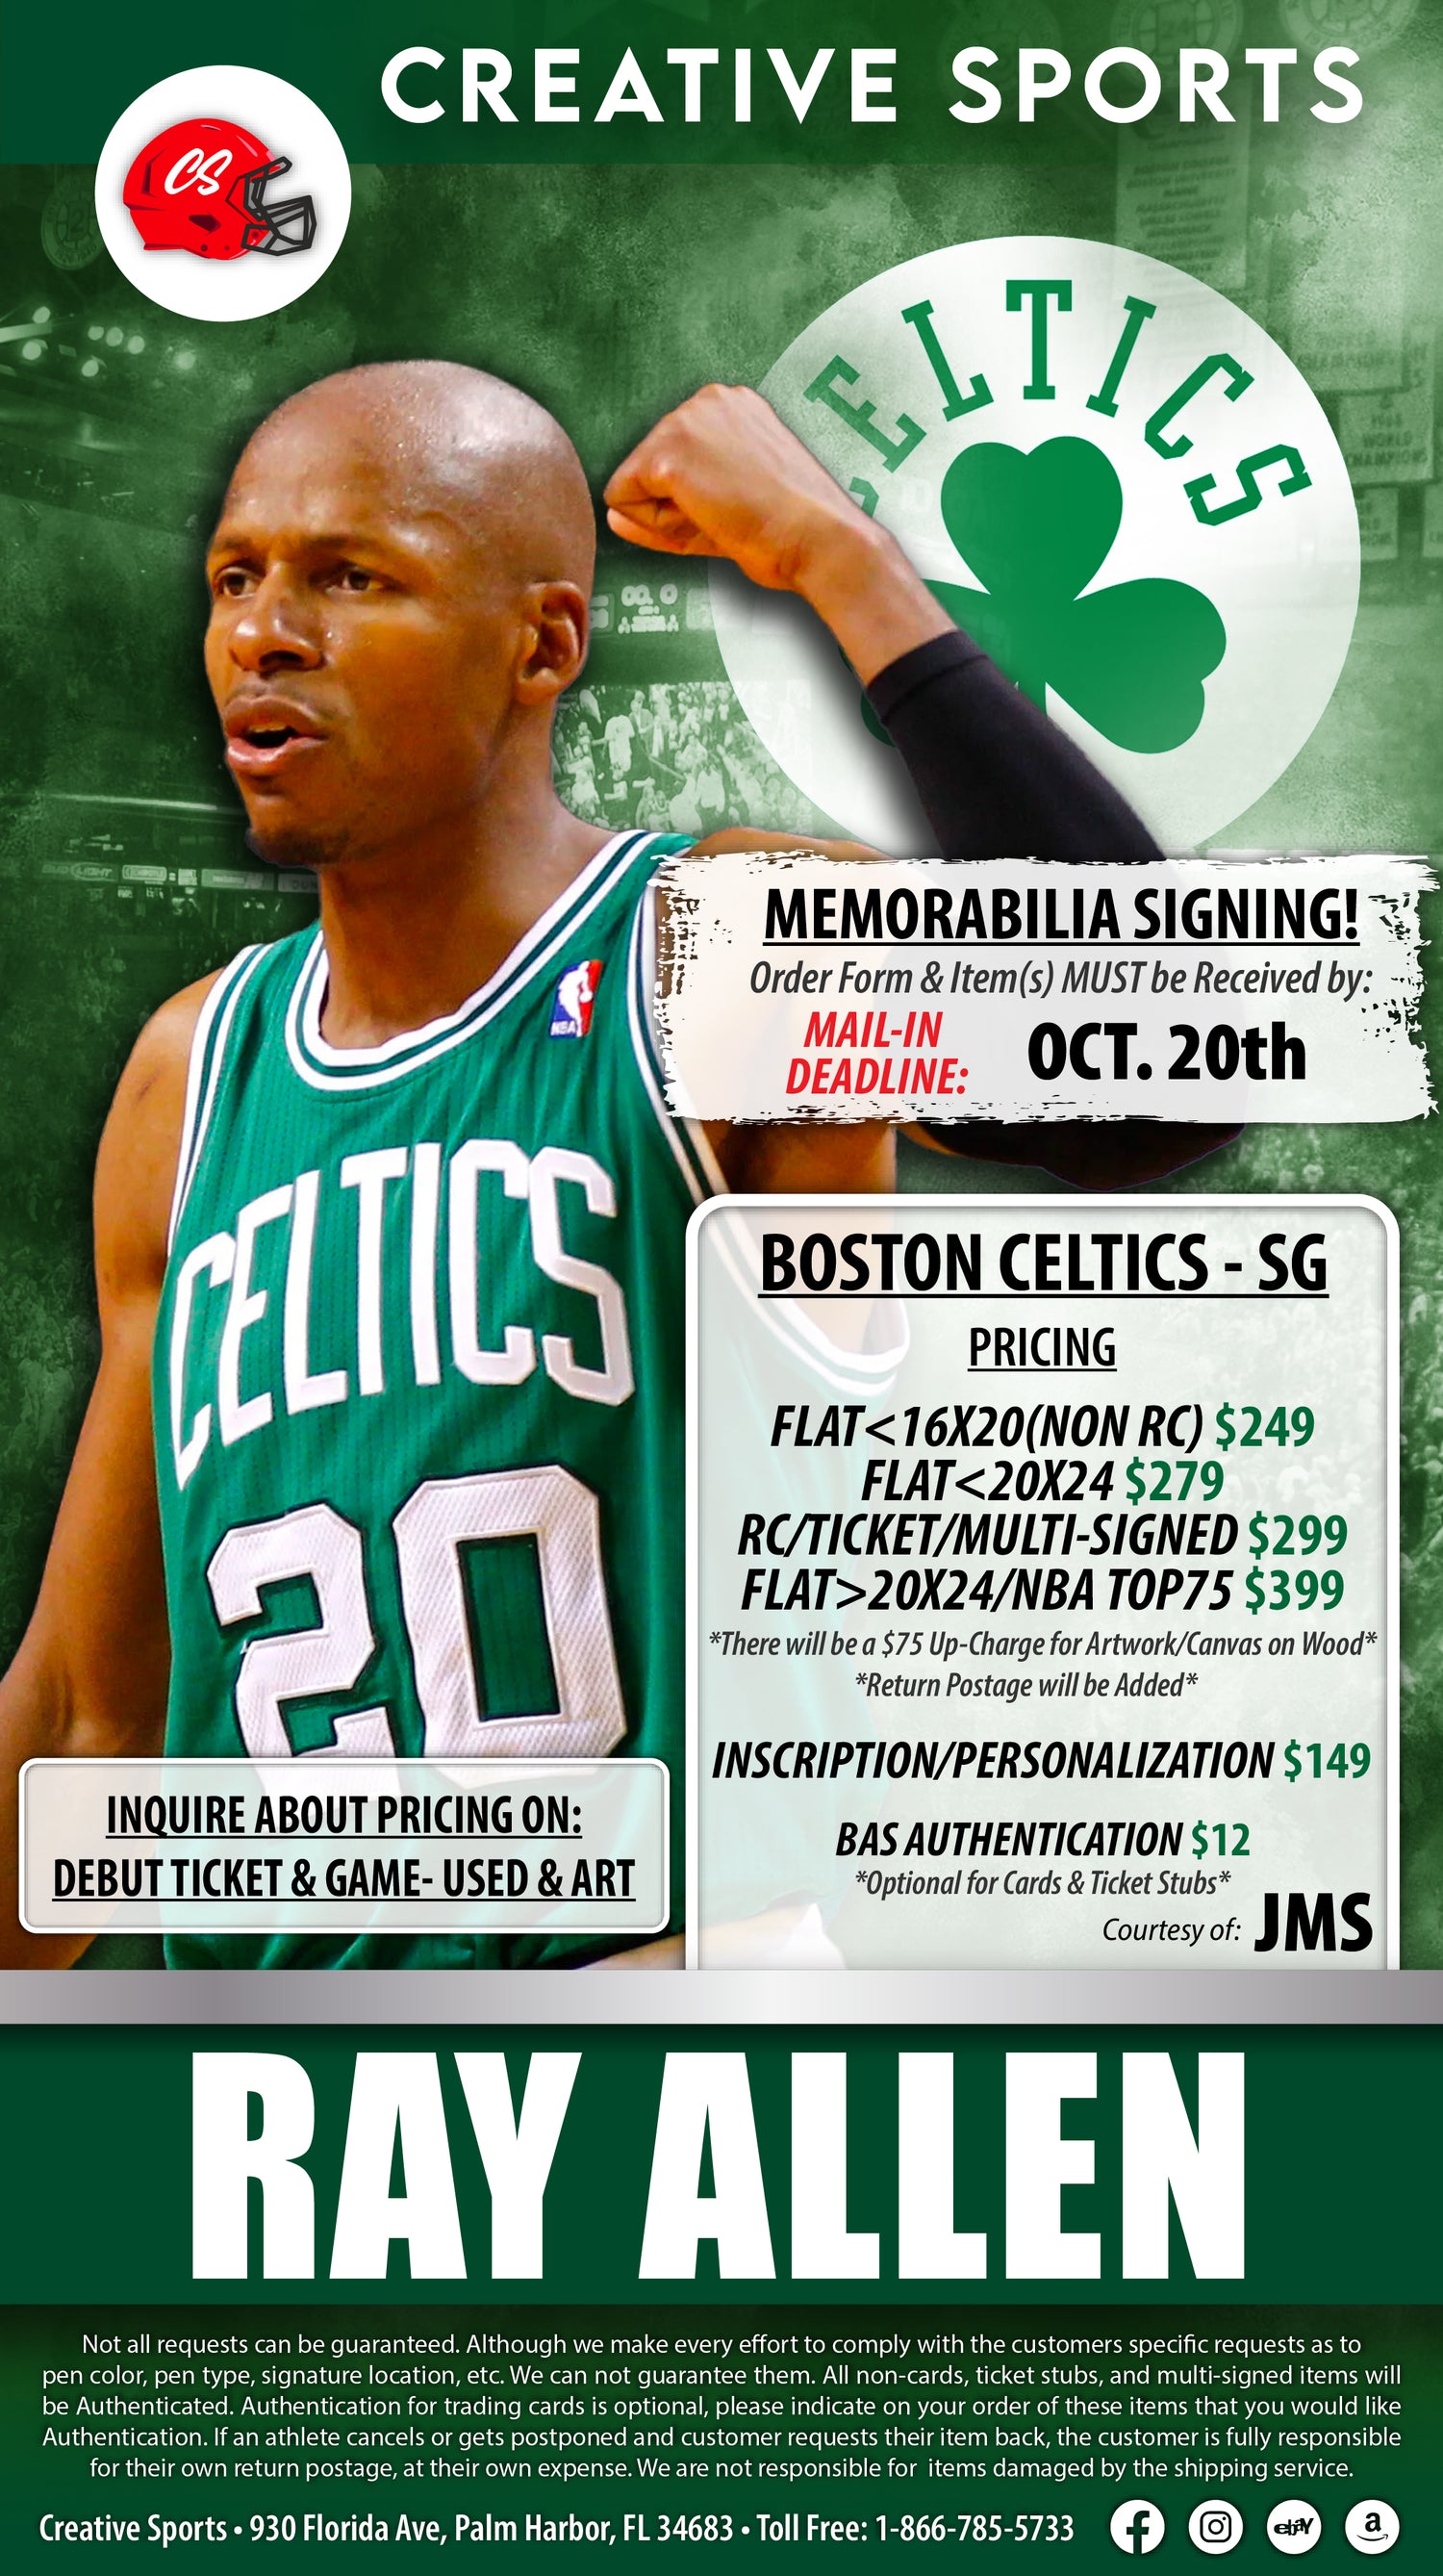 Boston Celtics Game Ticket Gift Voucher